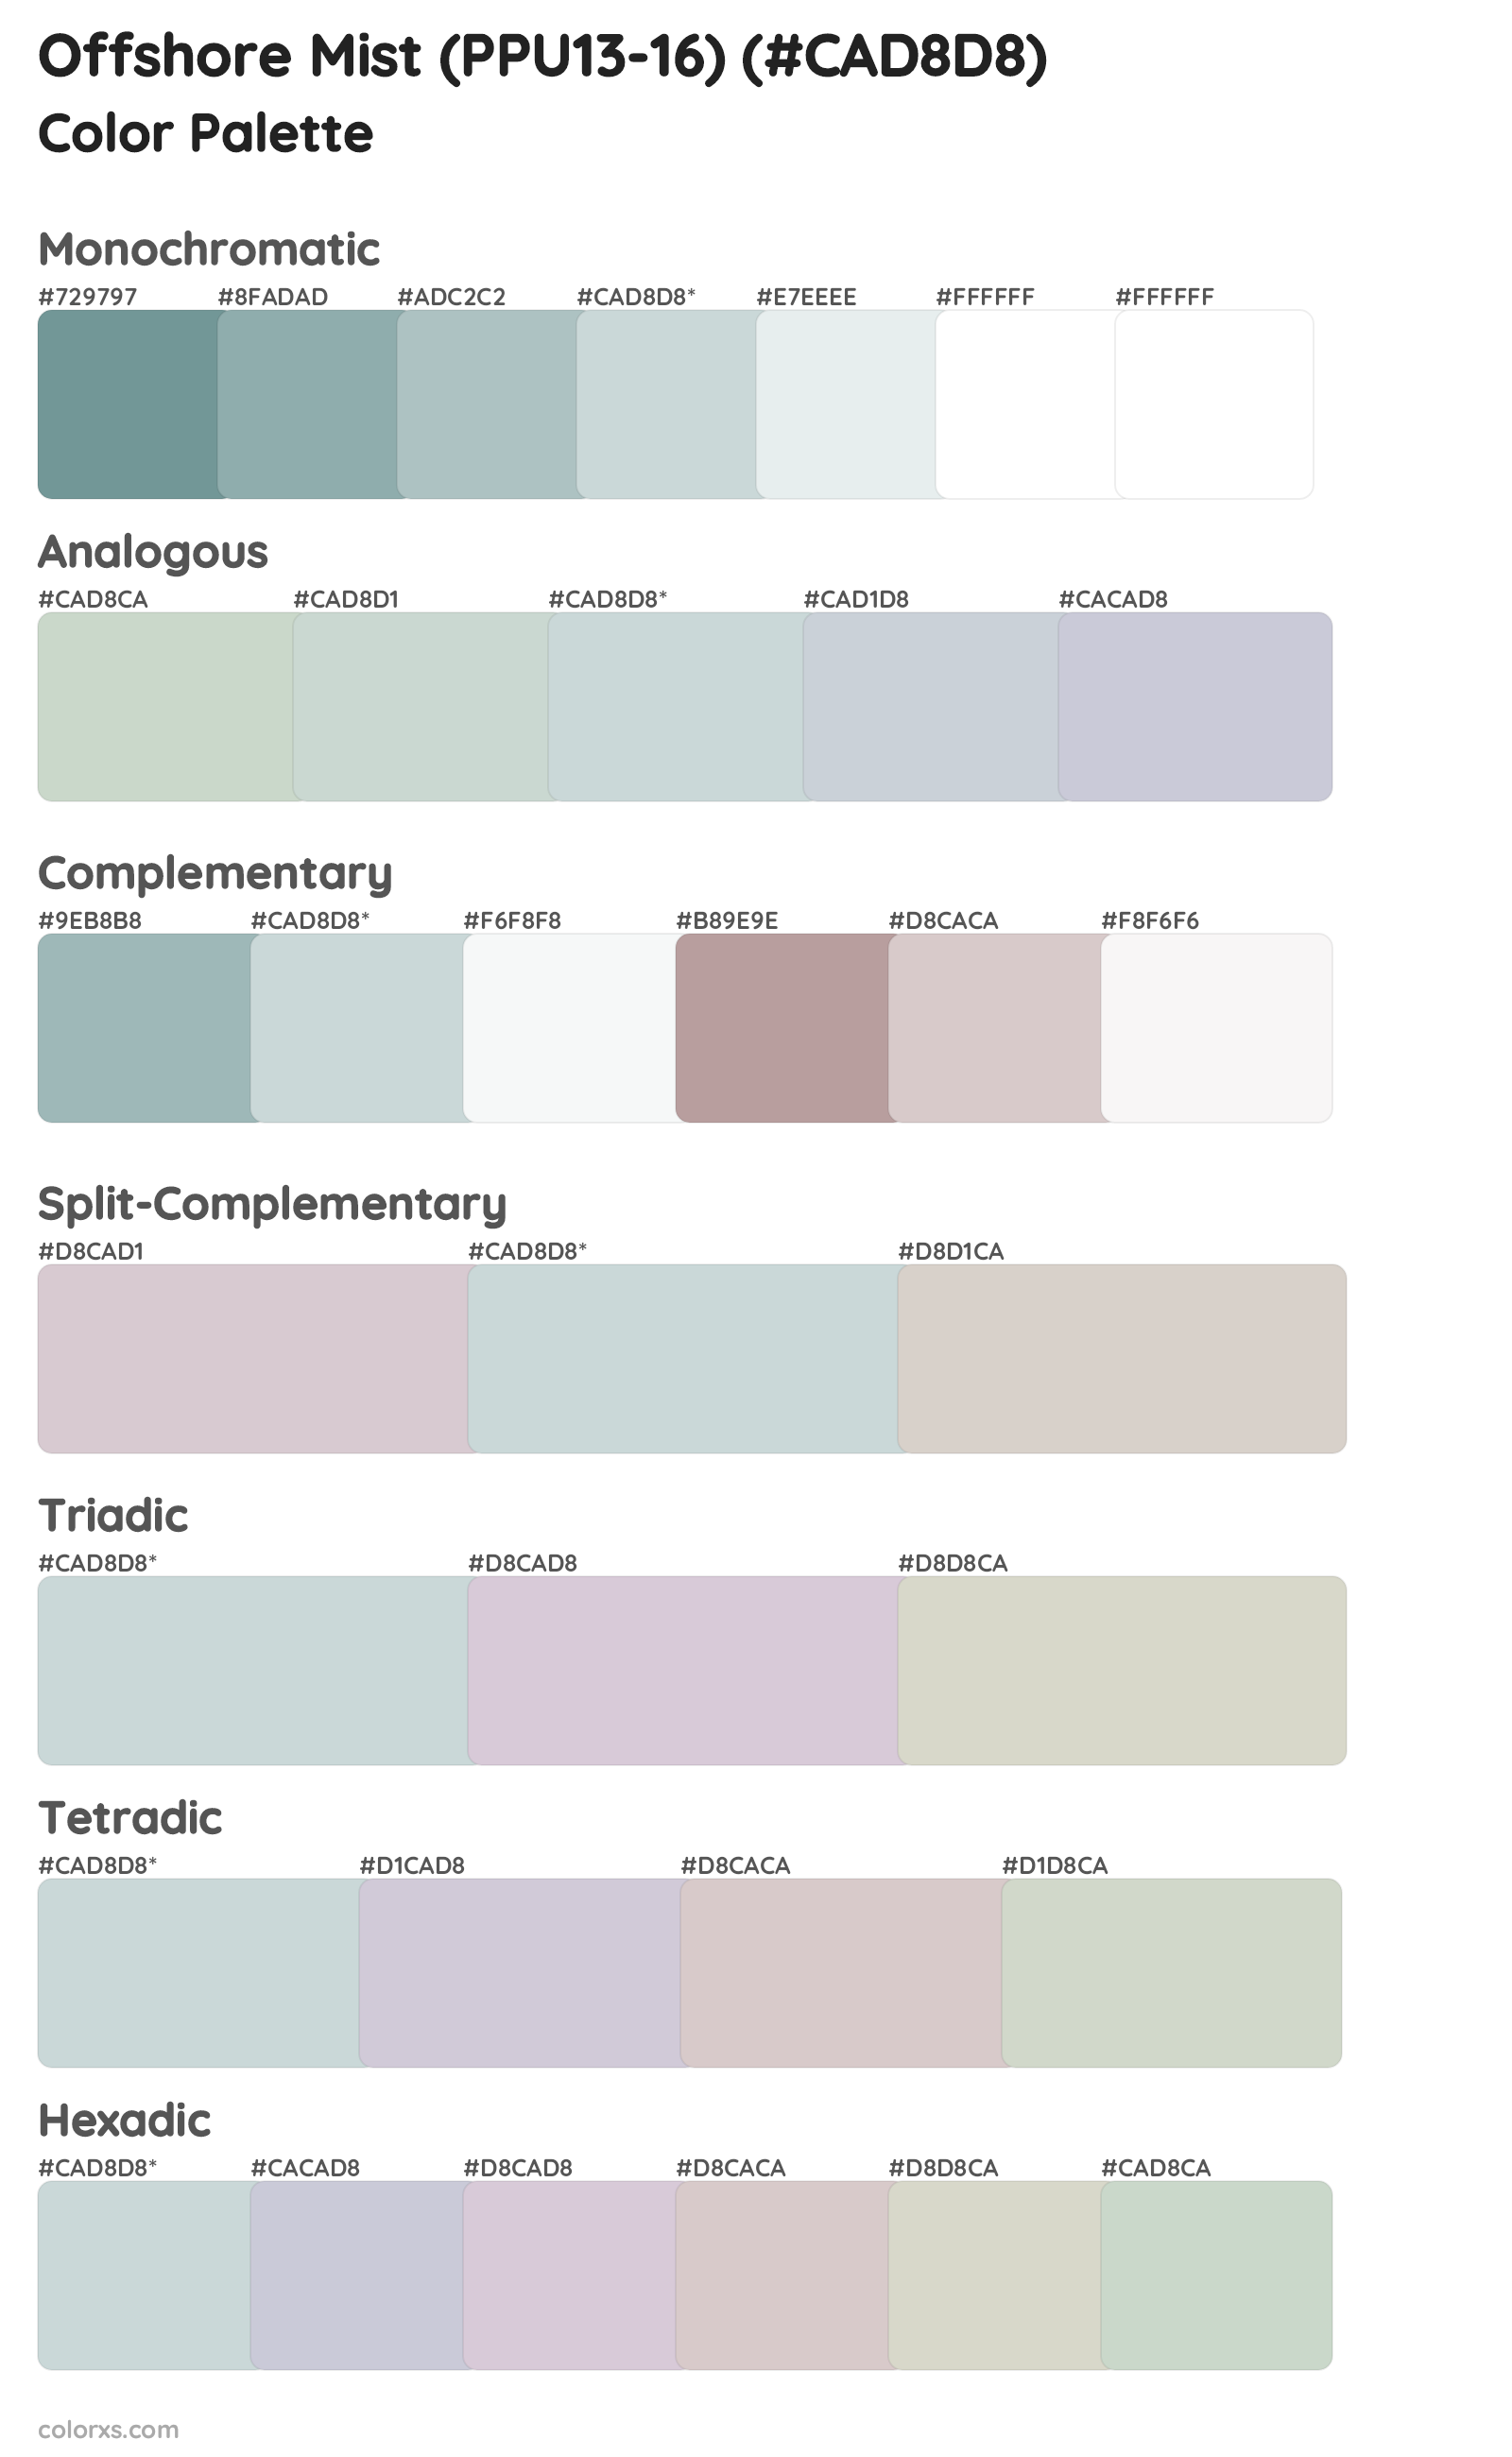 Offshore Mist (PPU13-16) Color Scheme Palettes